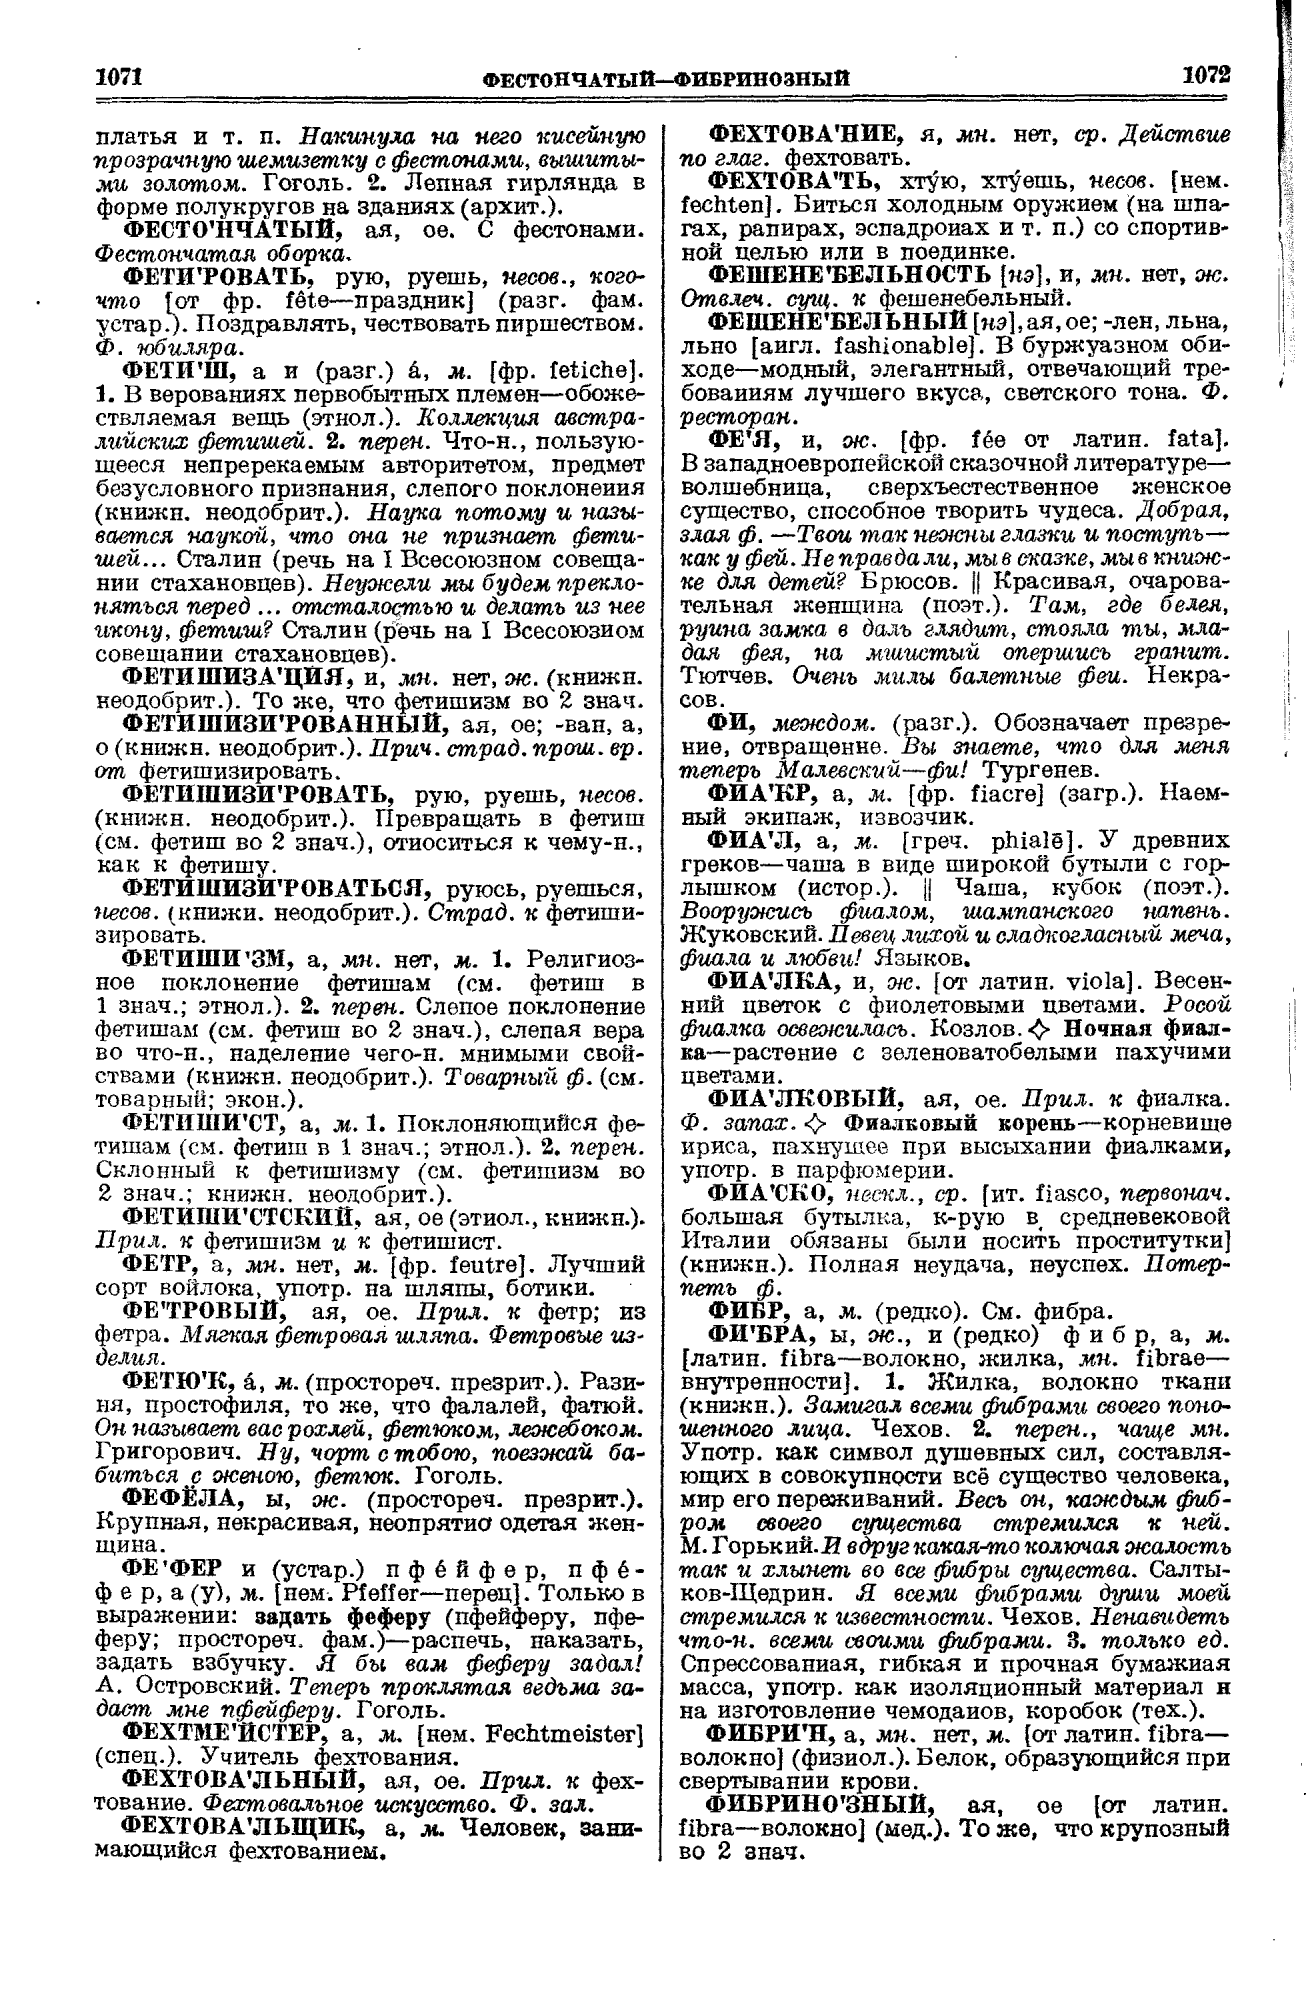 Фотокопия pdf / скан страницы 536 толкового словаря Ушакова (том 1)